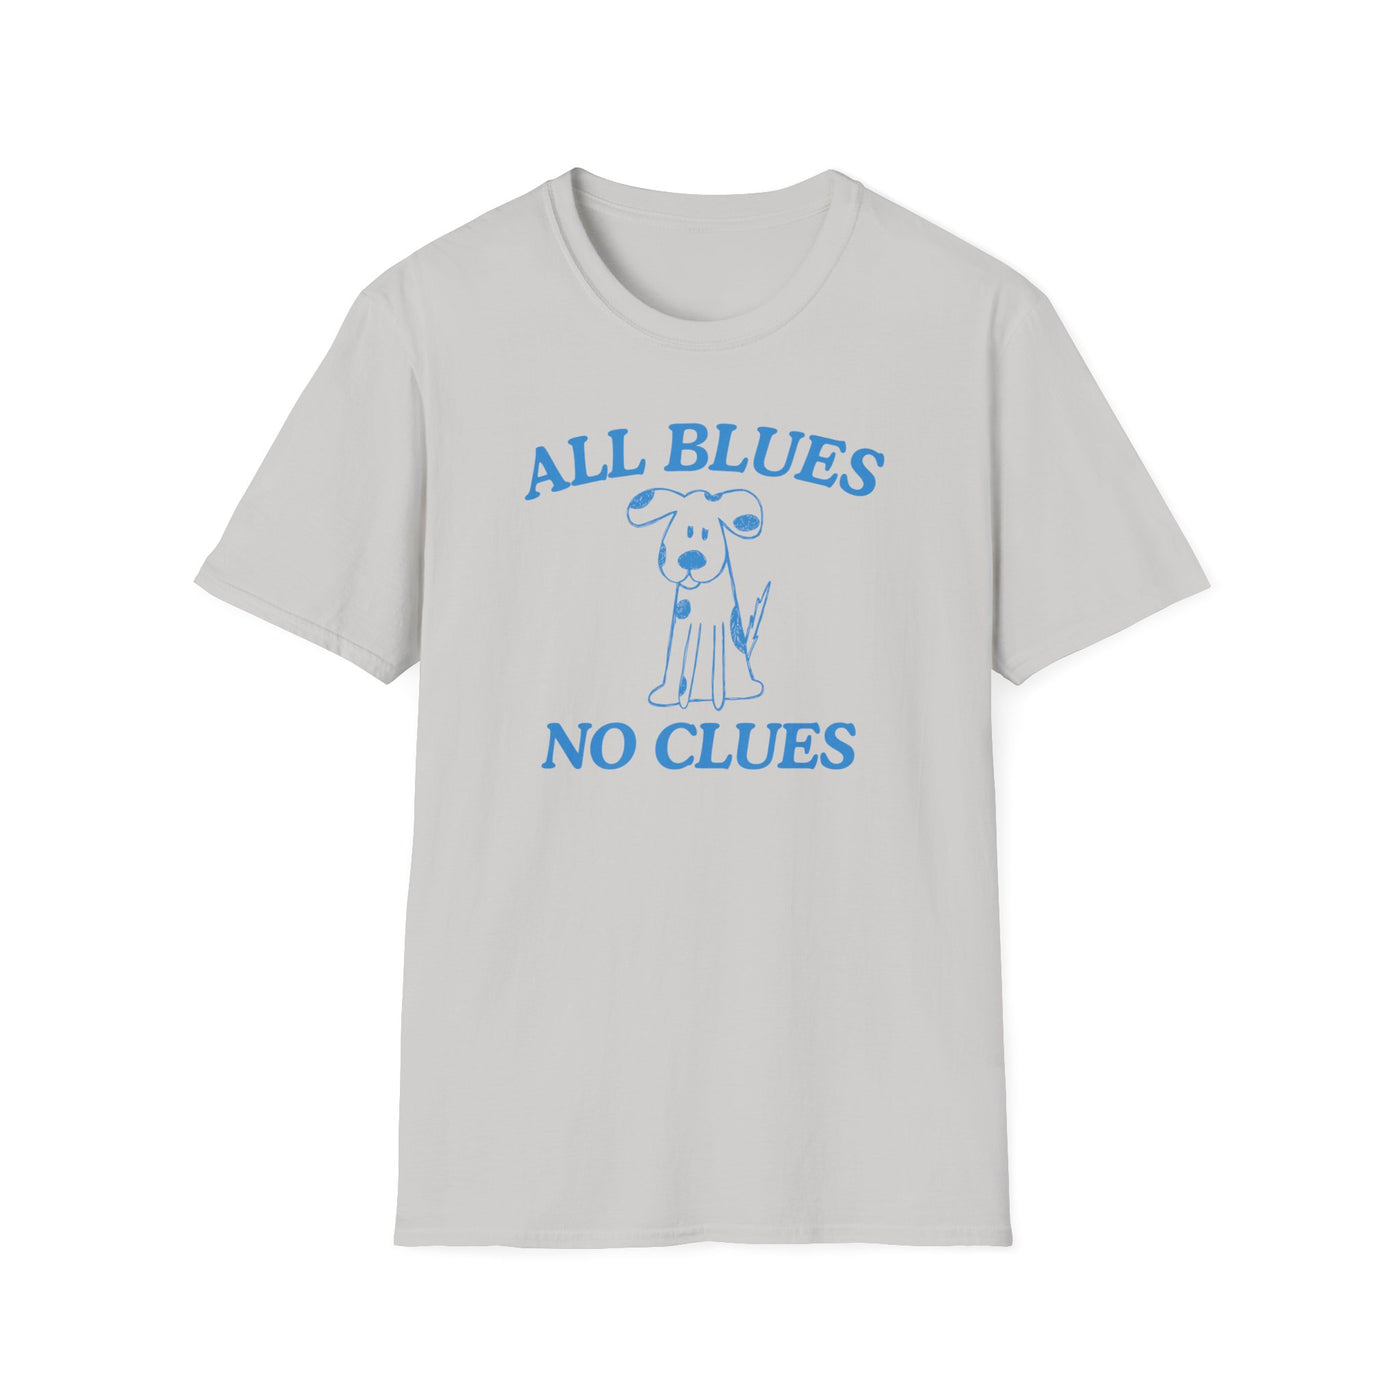 All Blues No Clues